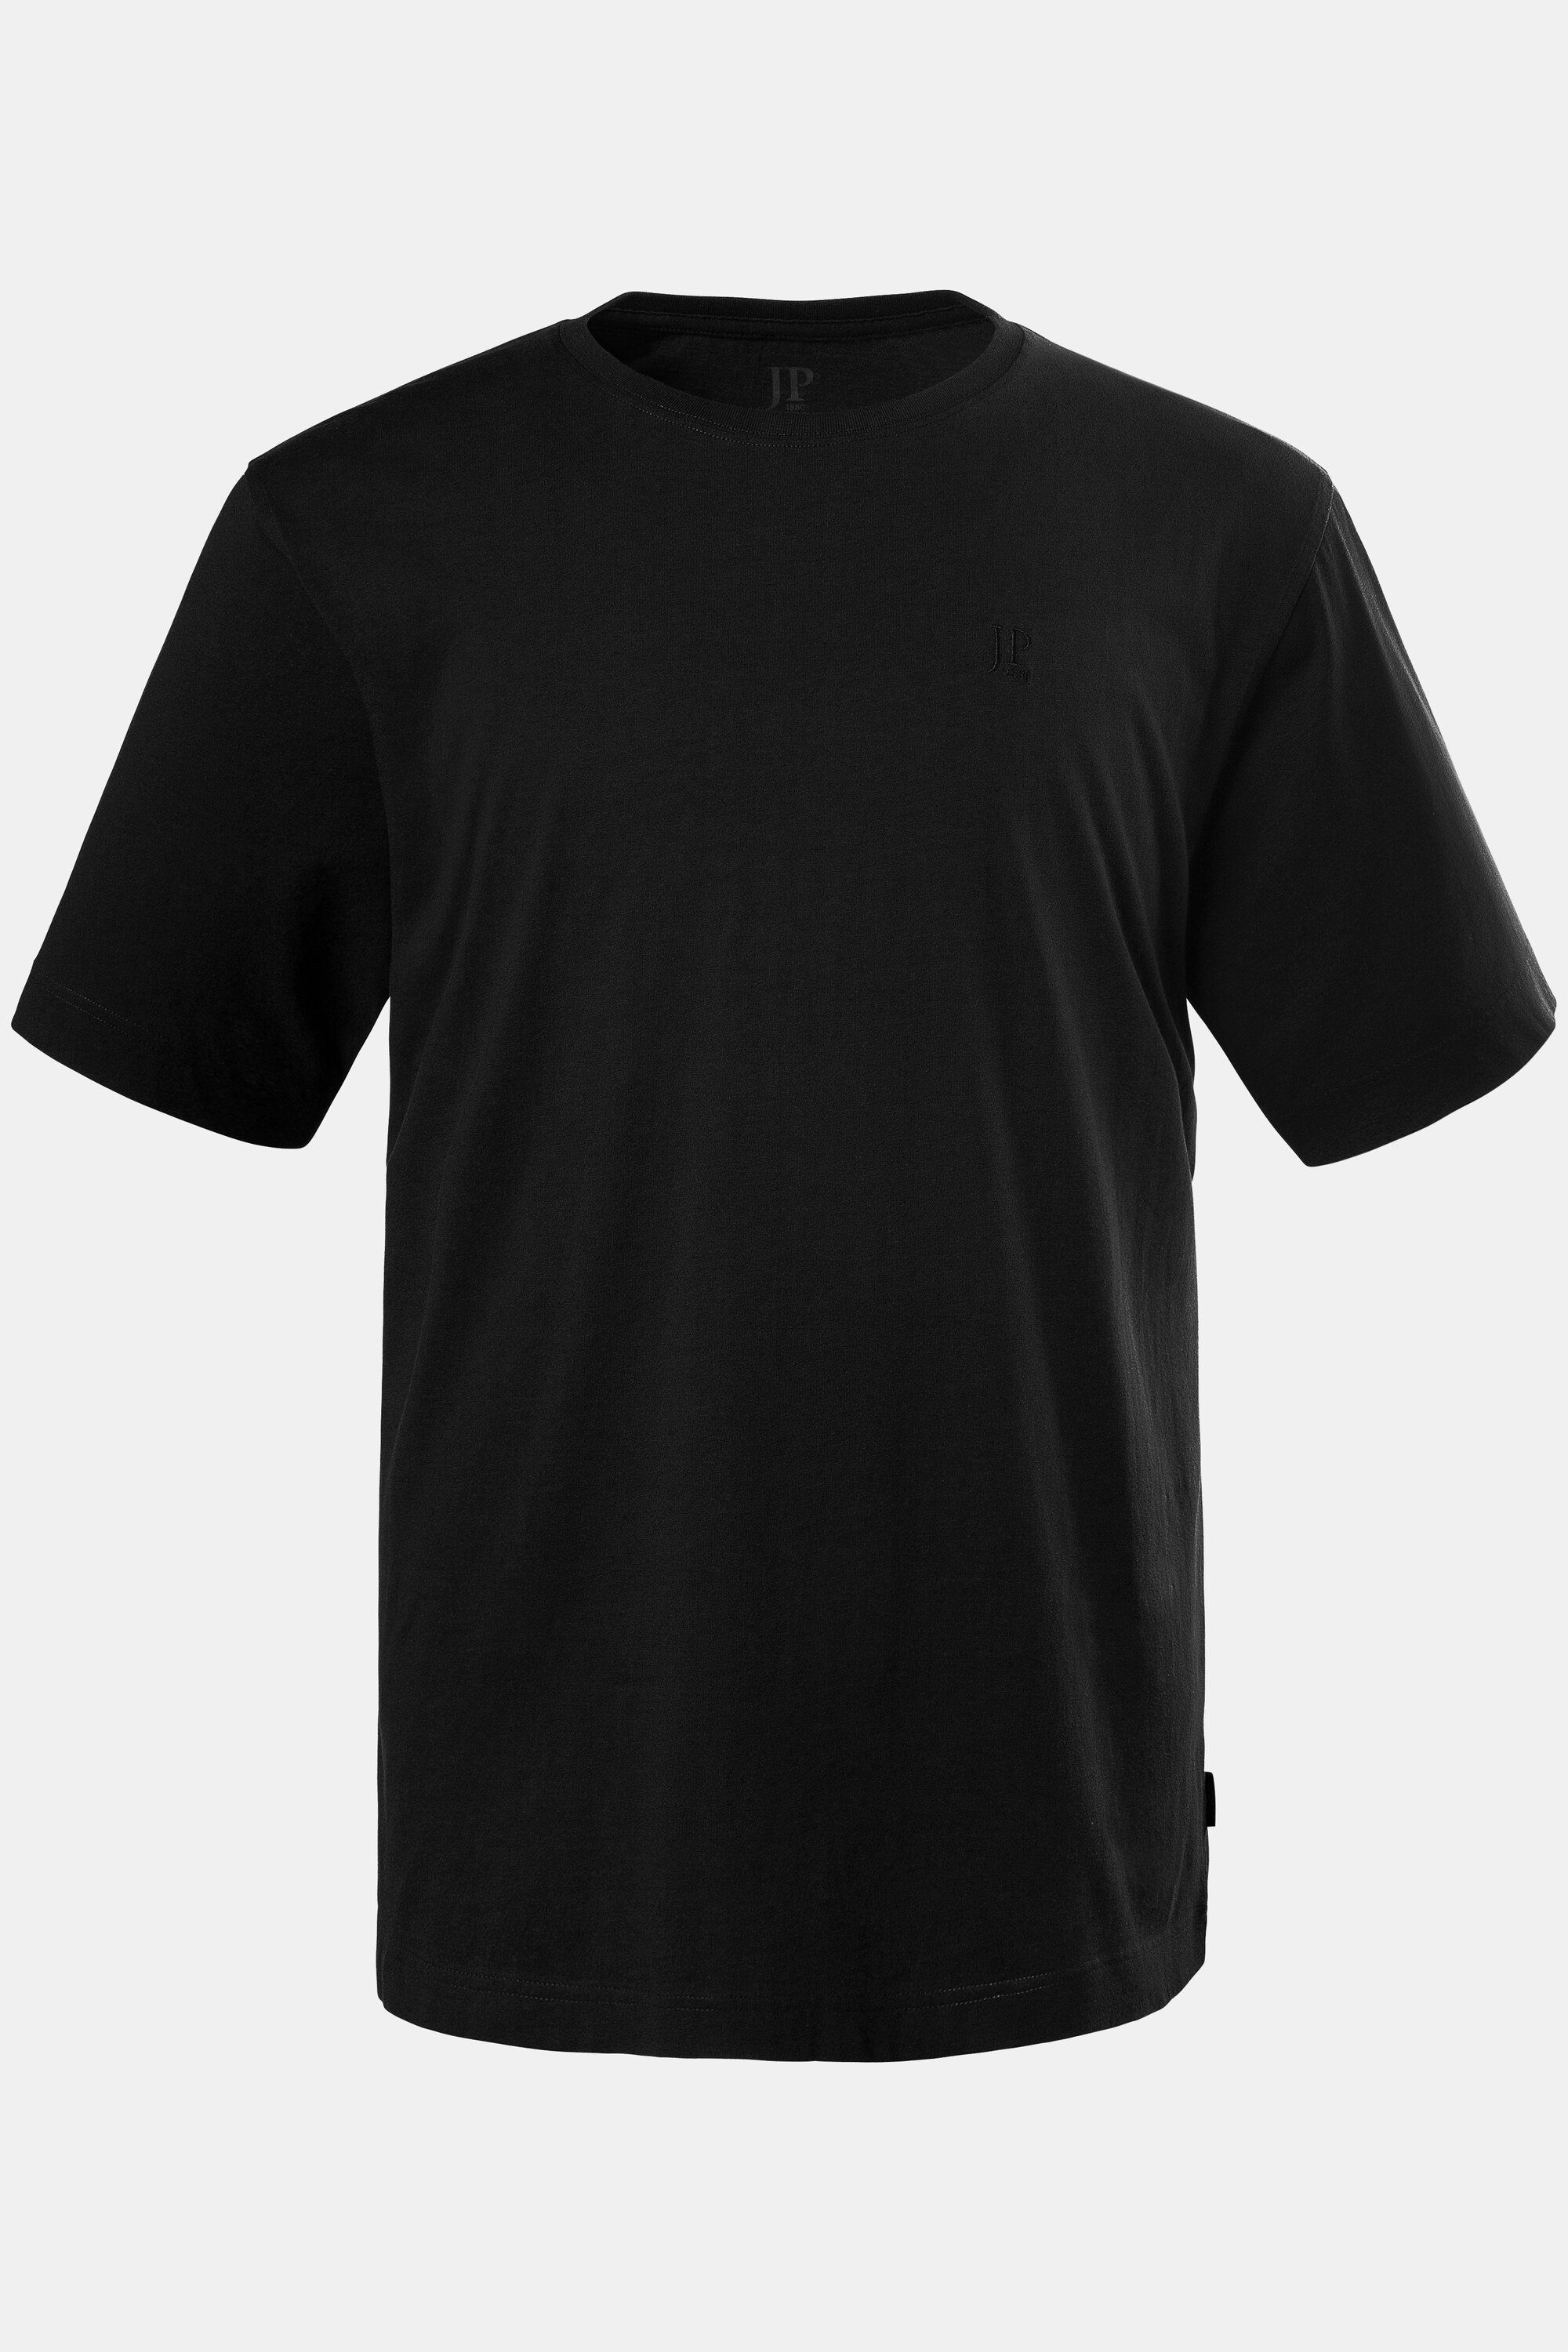 Basic JP1880 Baumwolle gekämmte bis T-Shirt Rundhals T-Shirt 8XL schwarz